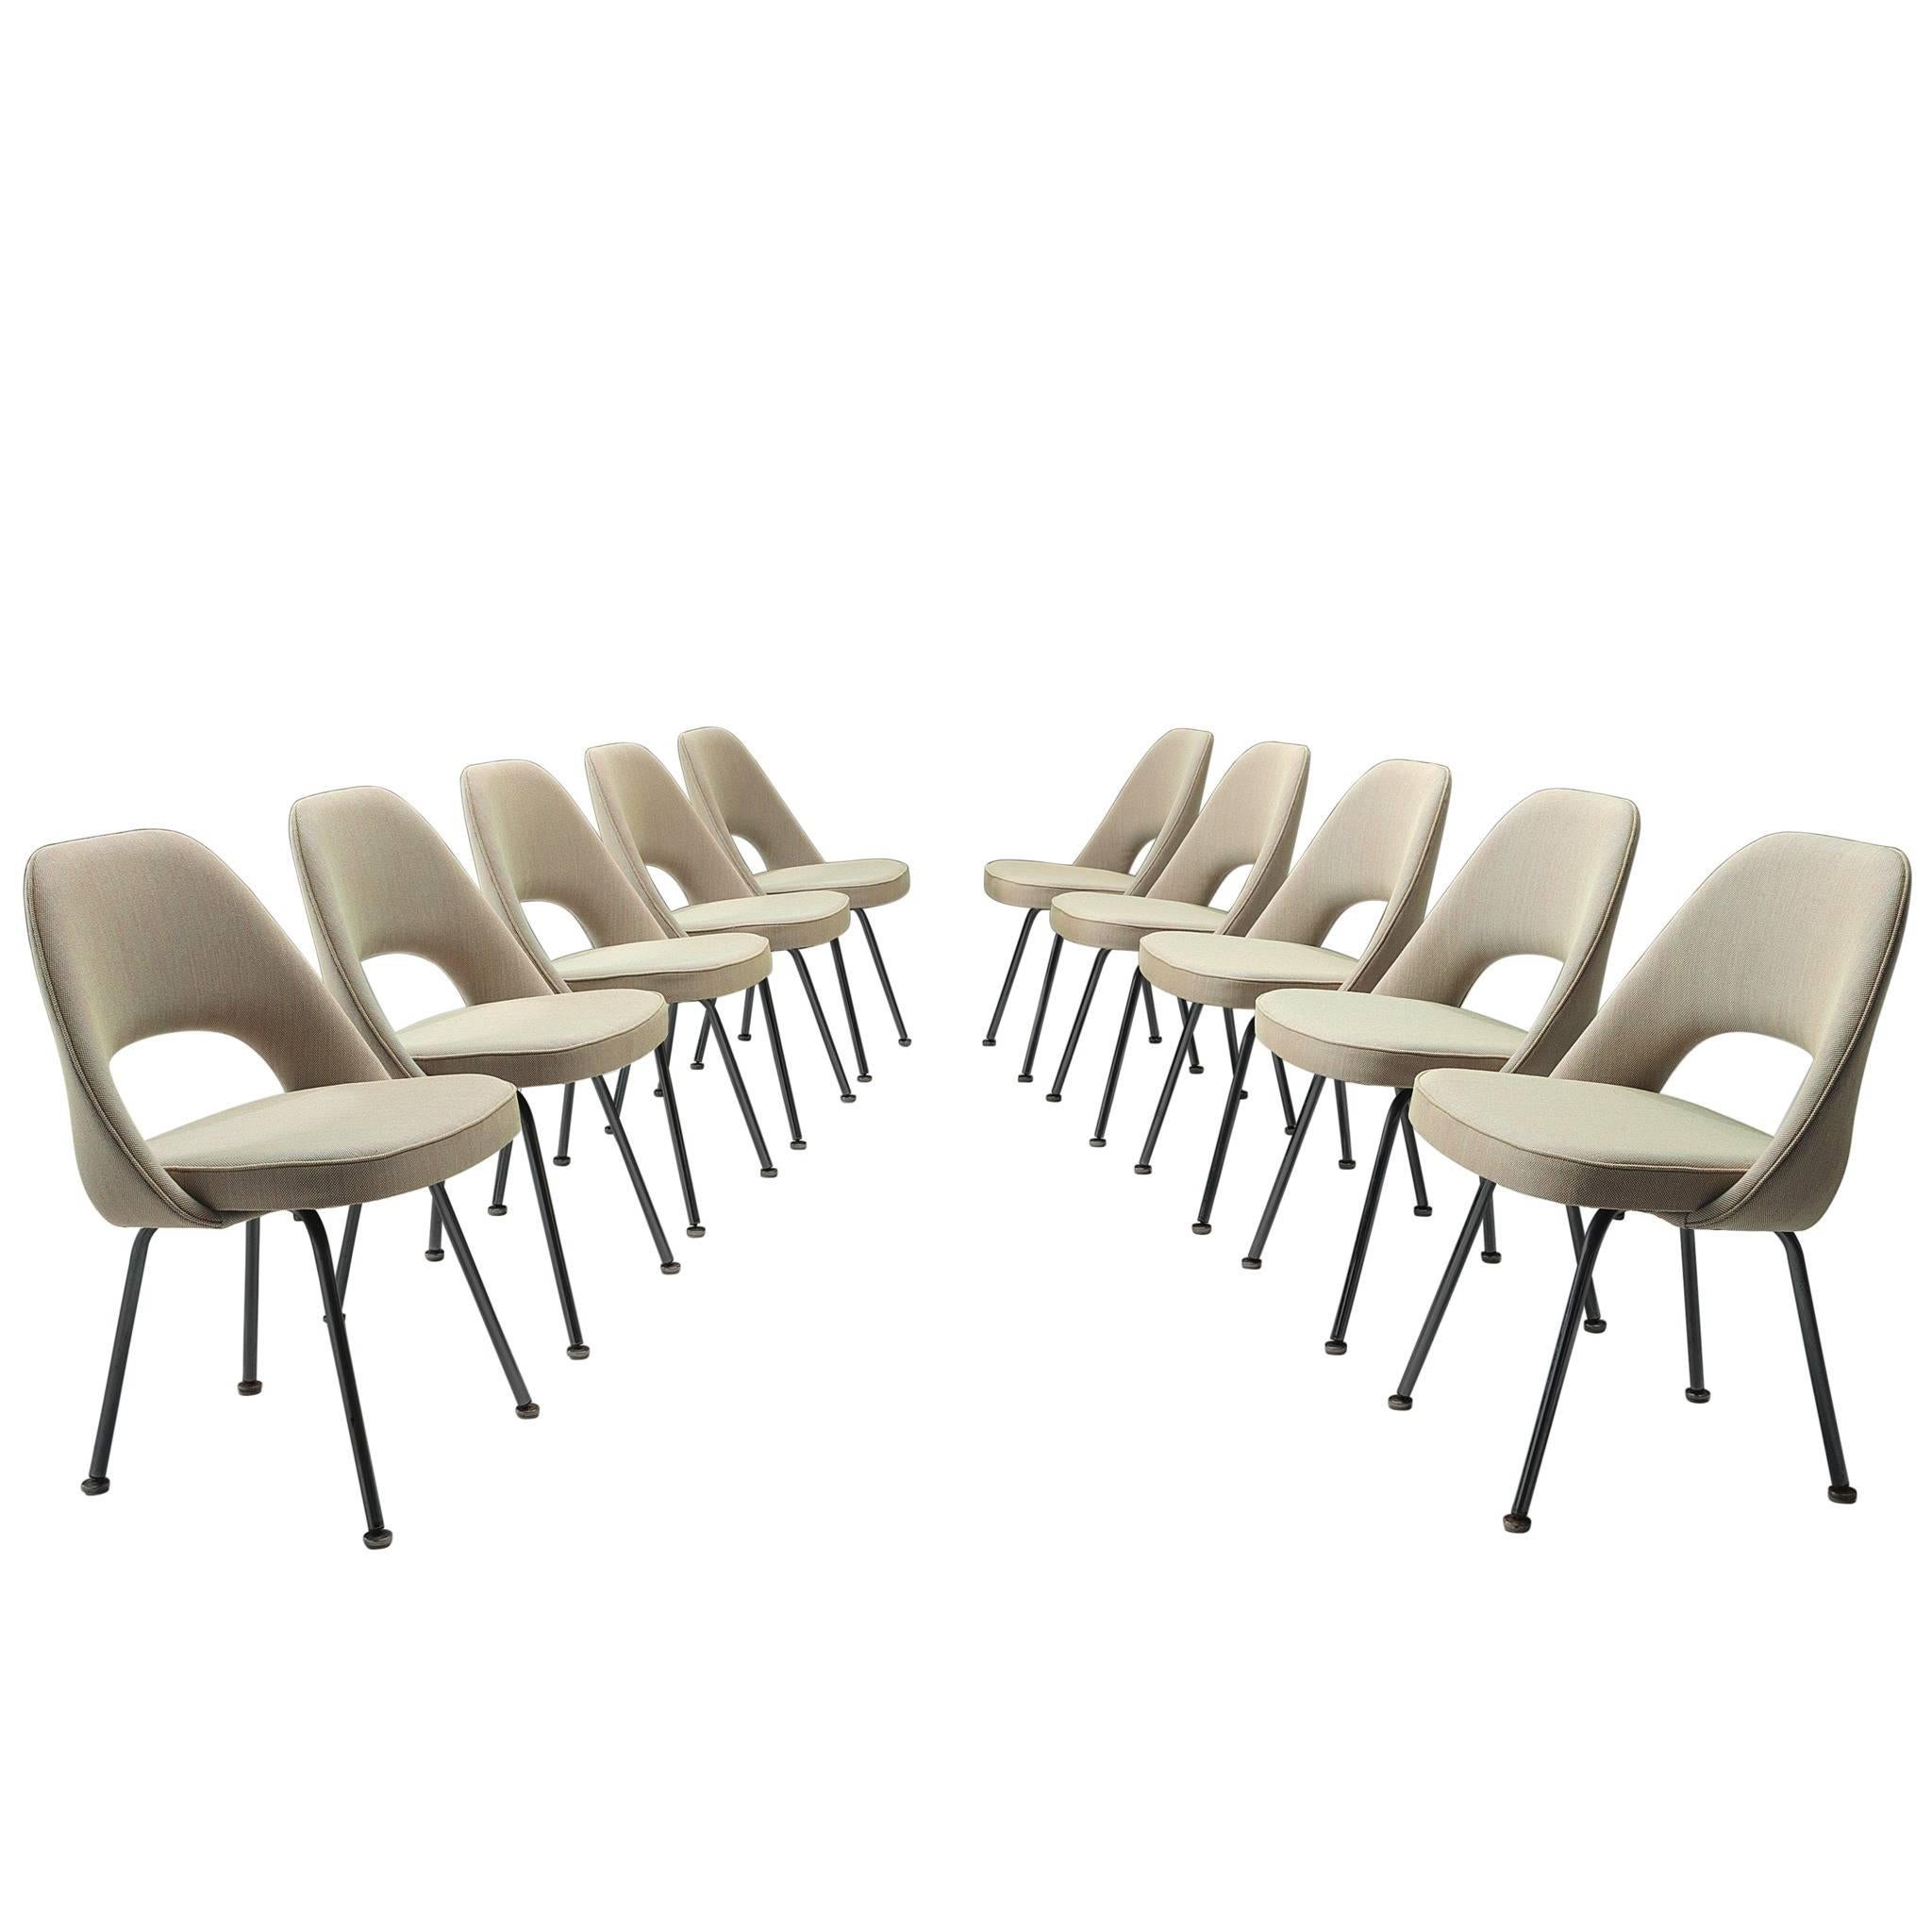 Eero Saarinen for Knoll Chairs